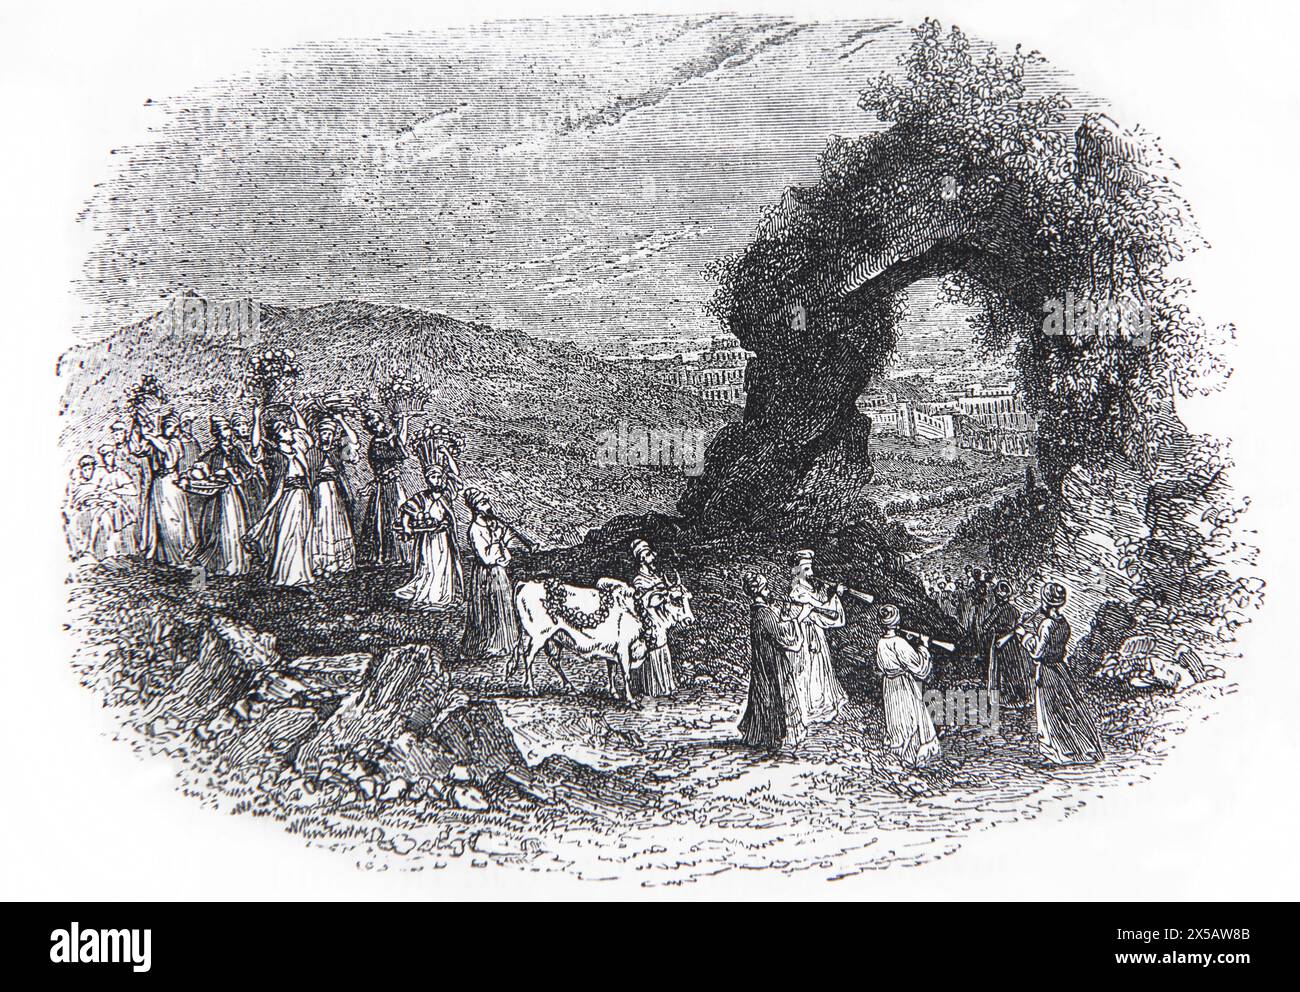 Holzgravur bringt die ersten Früchte nach Jerusalem (Ezekiel) Prozession der Avowal Pilger, die nach Jerusalem marschieren, geführt von Stier- und Flötenspielern W Stockfoto